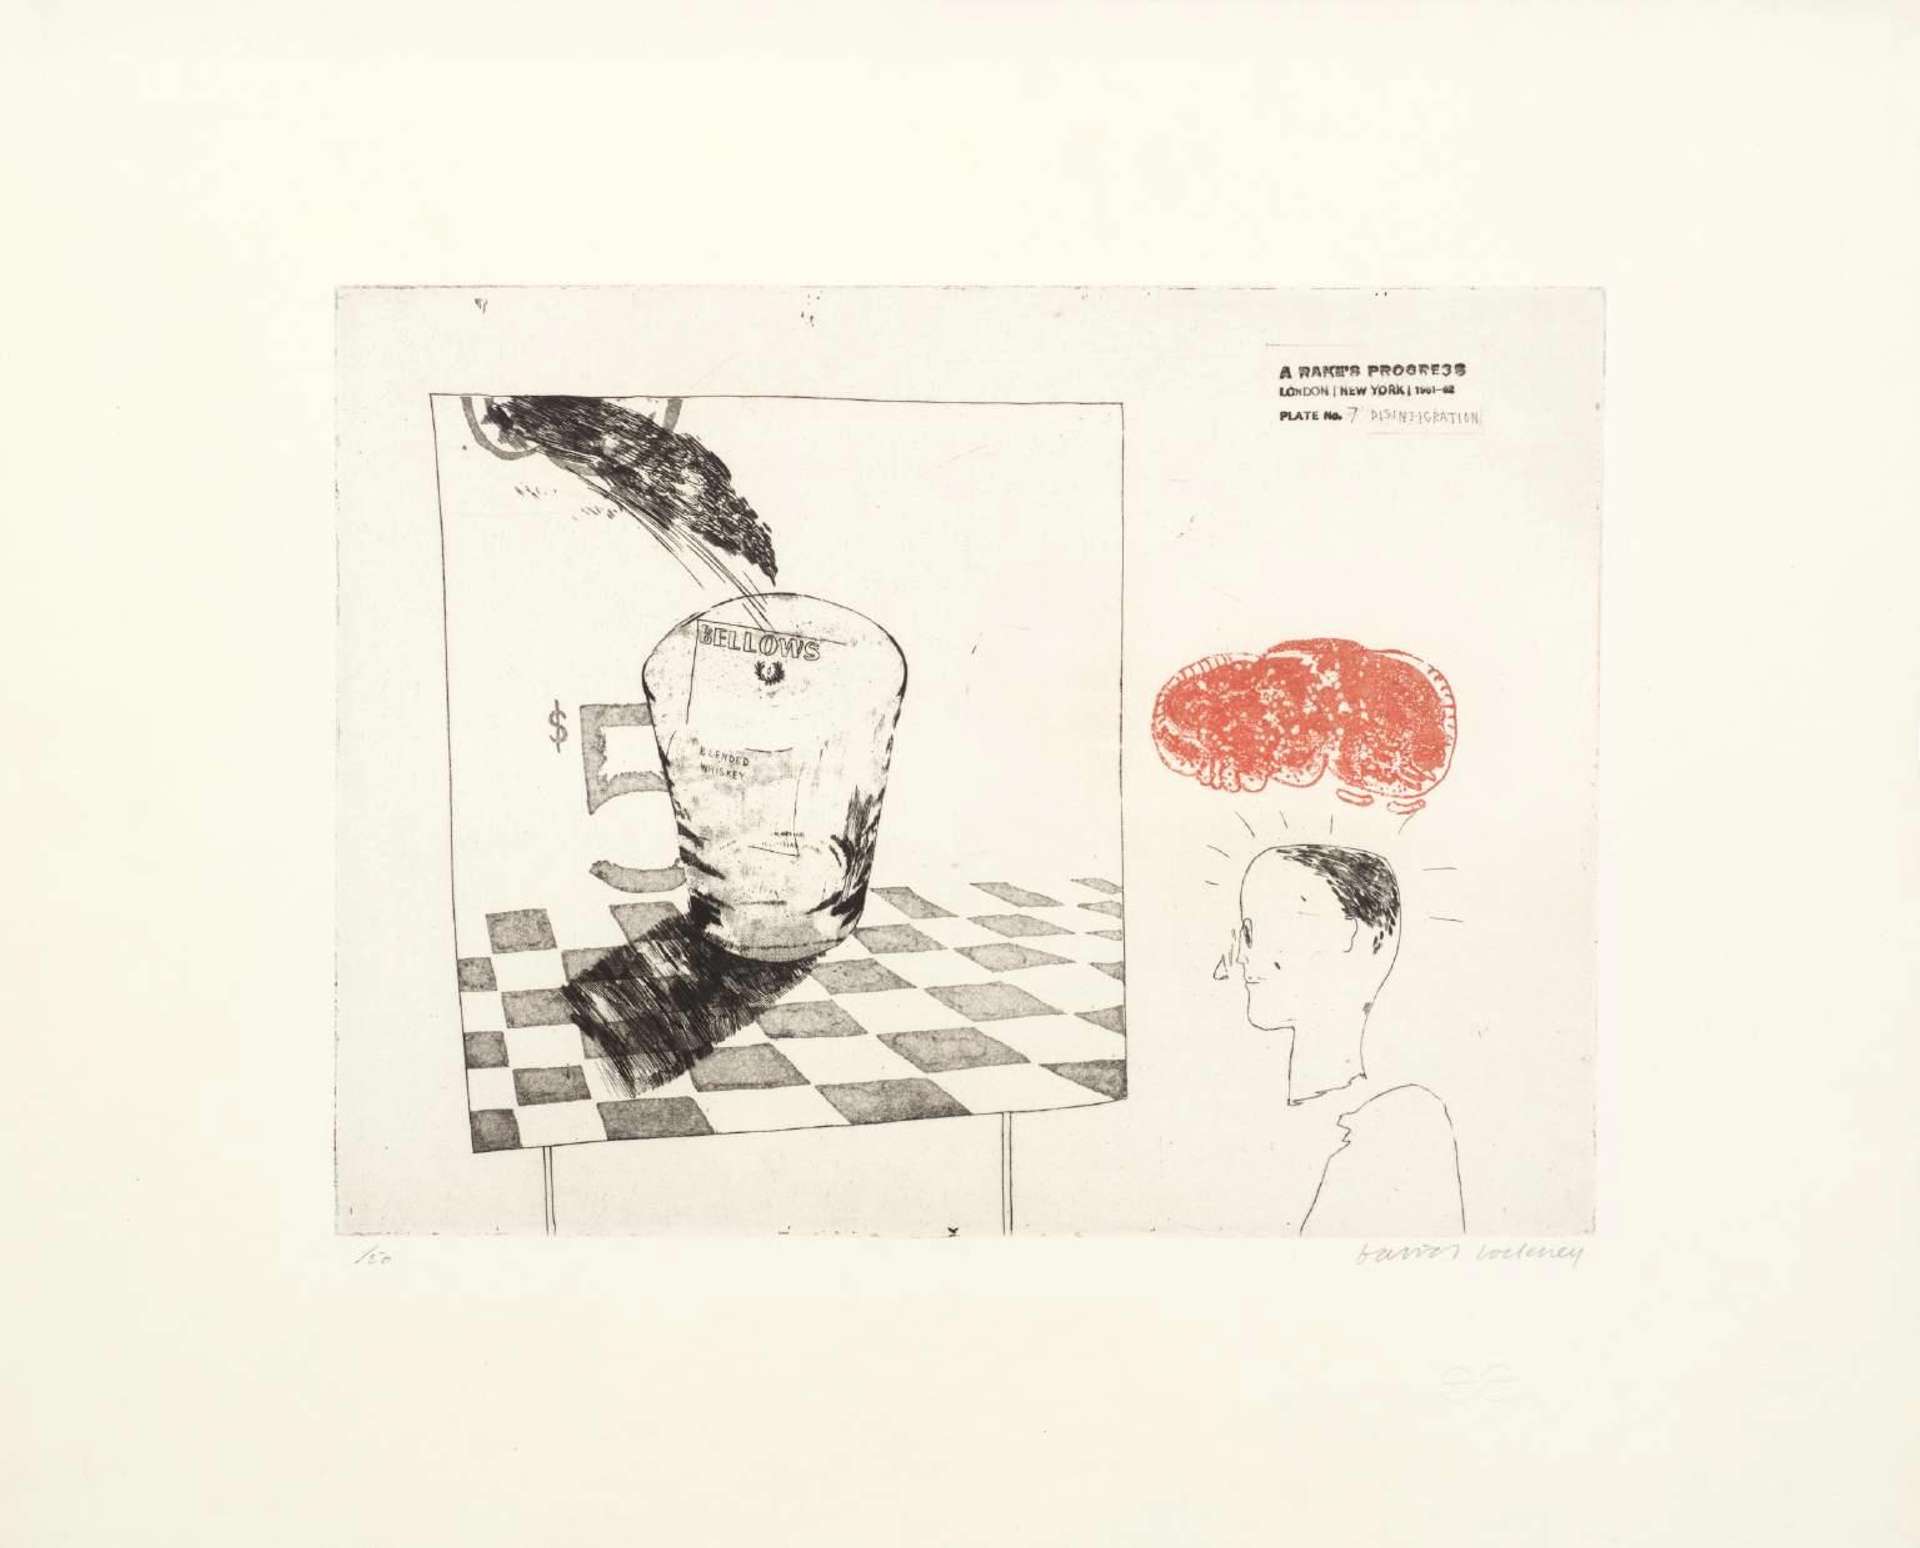 Disintegration - Signed Print by David Hockney 1963 - MyArtBroker